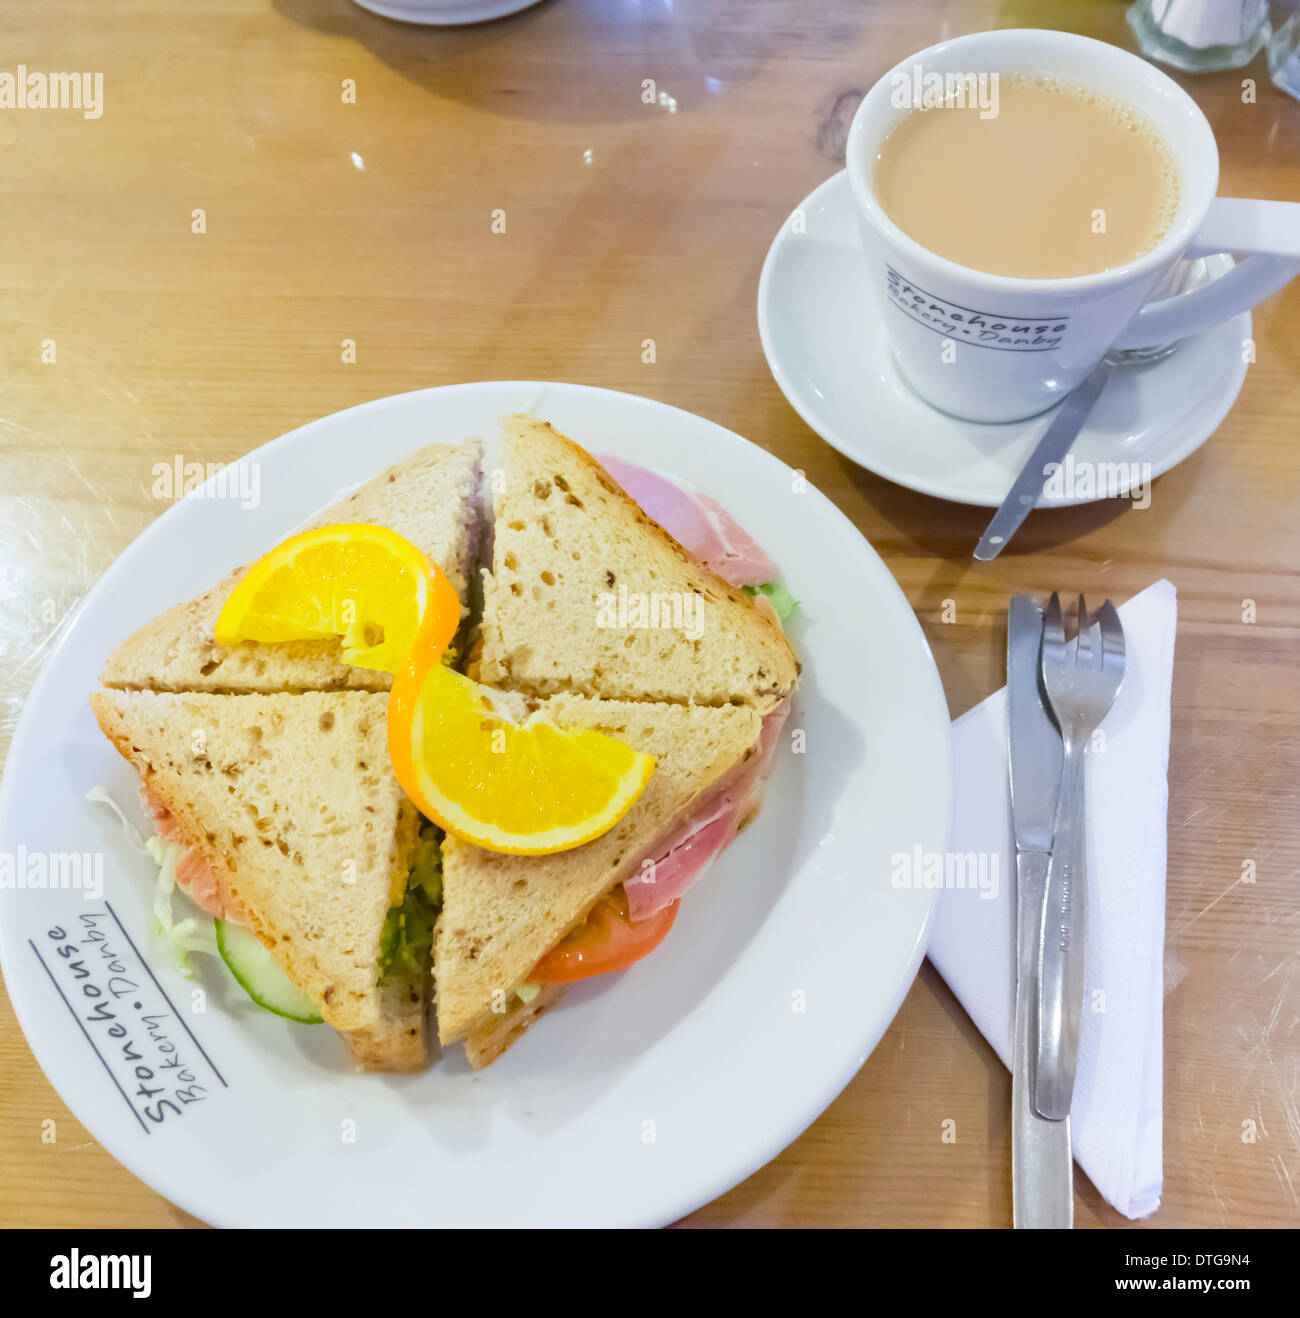 Café pranzo un prosciutto e insalata sandwich in multi-pane di grano con un tocco di colore arancione e una tazza di tè in Stonehouse Bakery Café Foto Stock